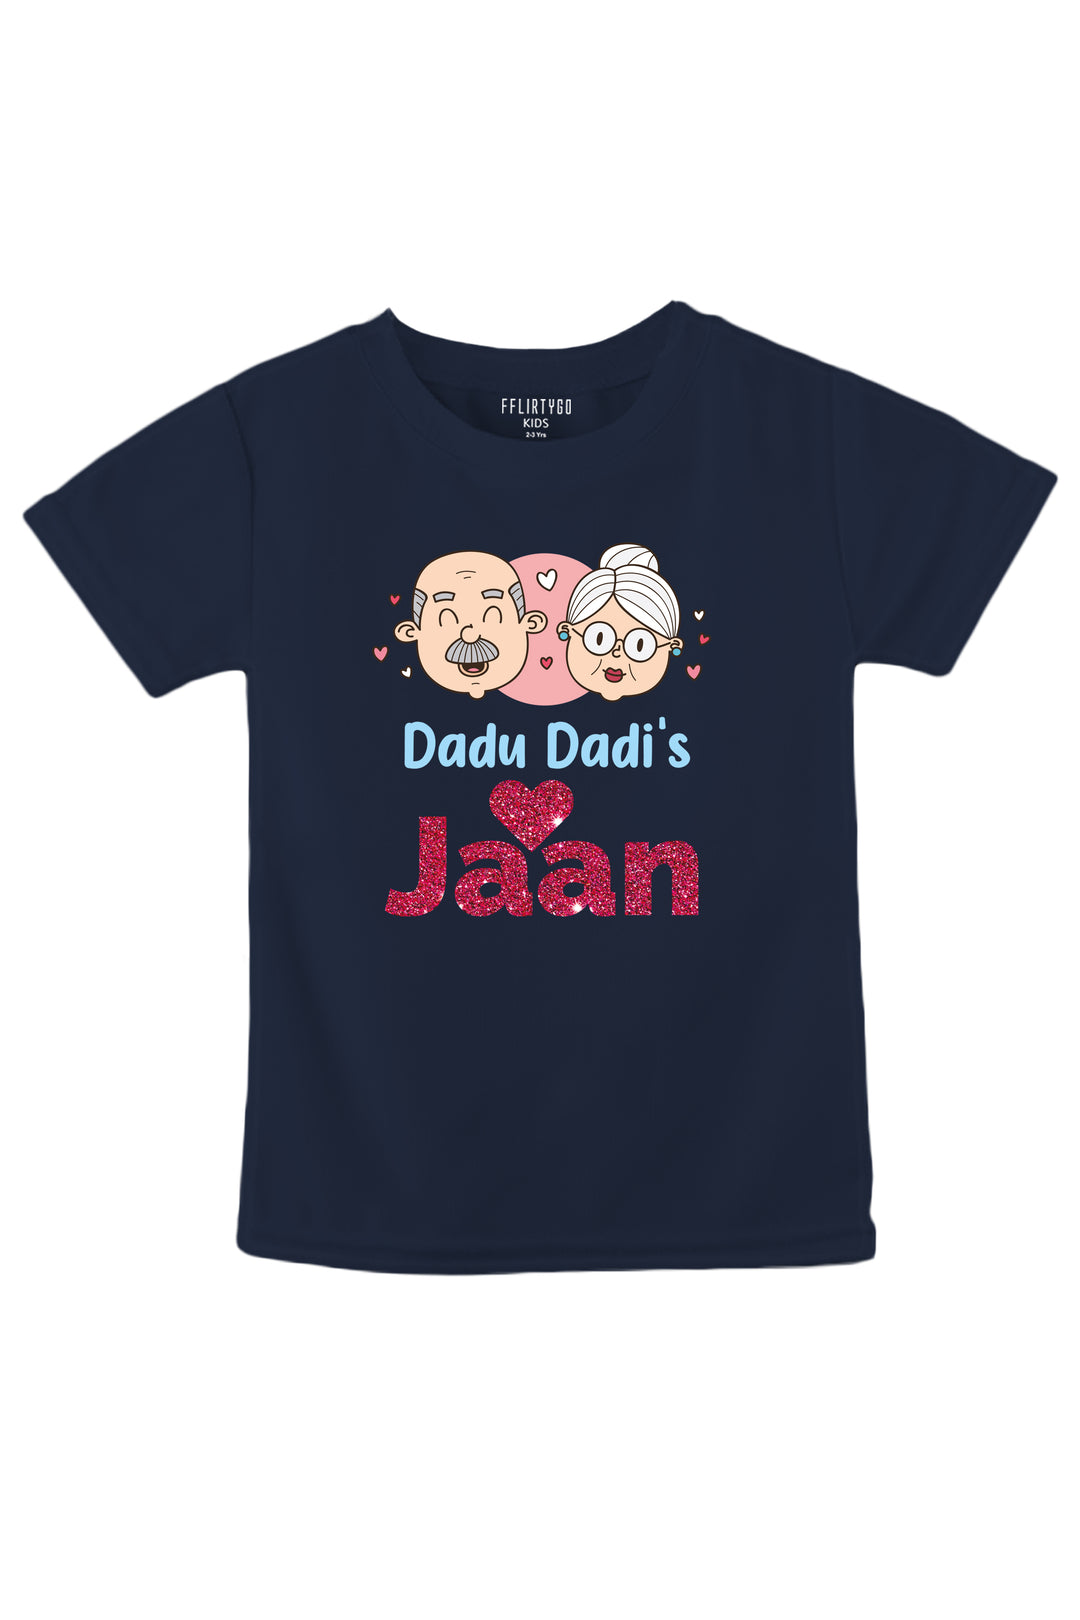 Dadu and Dadi's Jaan